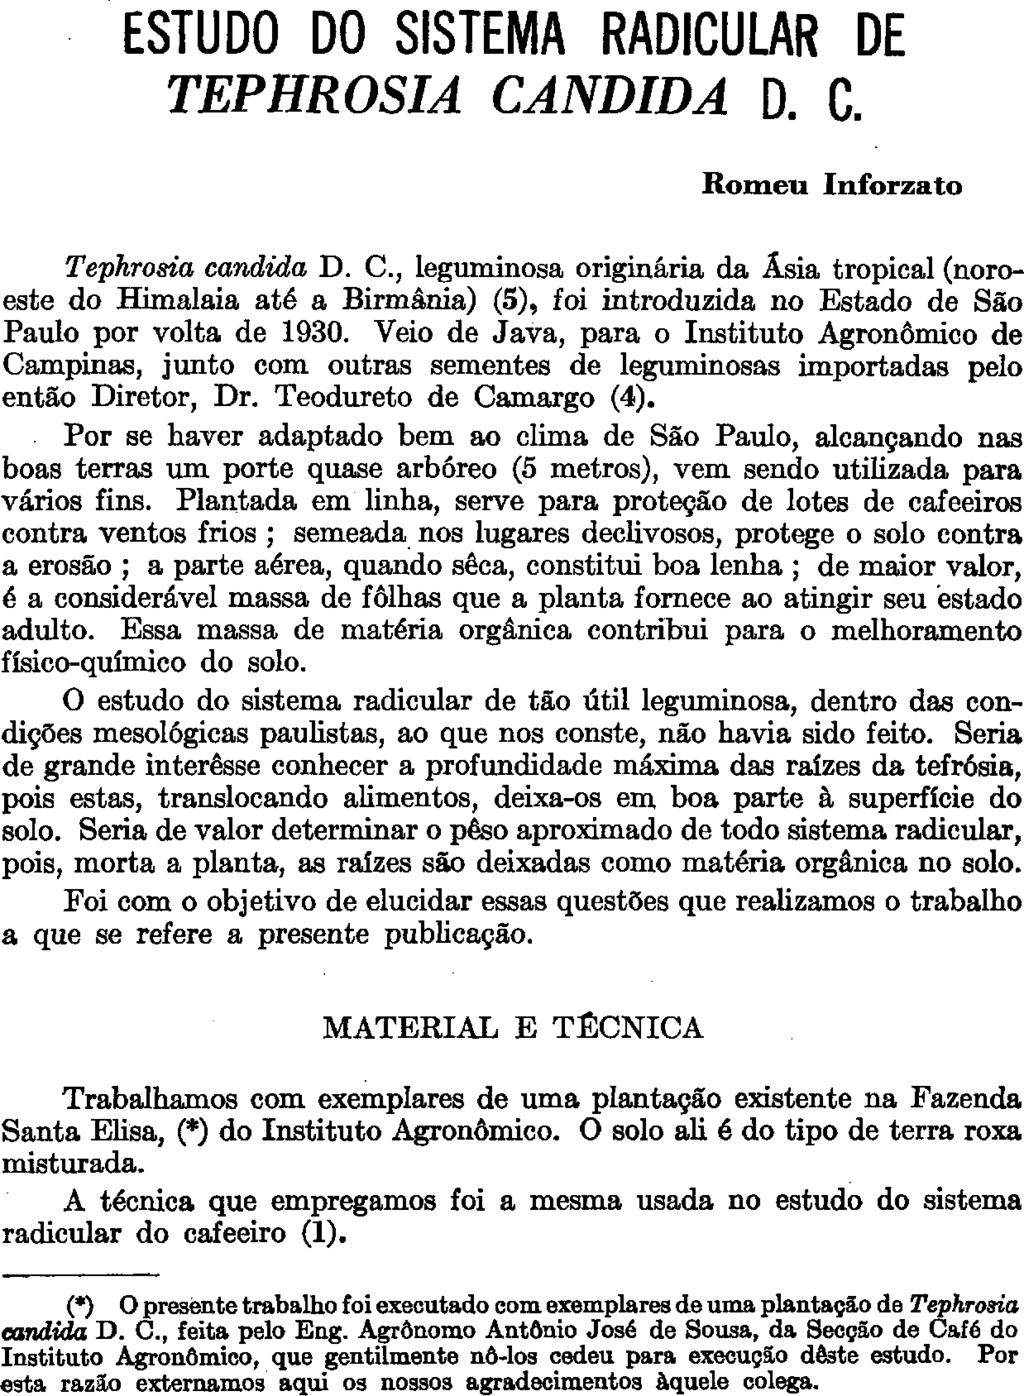 ESTUDO DO SISTEMA RADICULAR DE TEPHROSIA CANDIDA D. C. Romeu Inforzato (*) O presente trabalho foi executado com exemplares de uma plantação de Tephrosia candida D. C., feita pelo Eng.